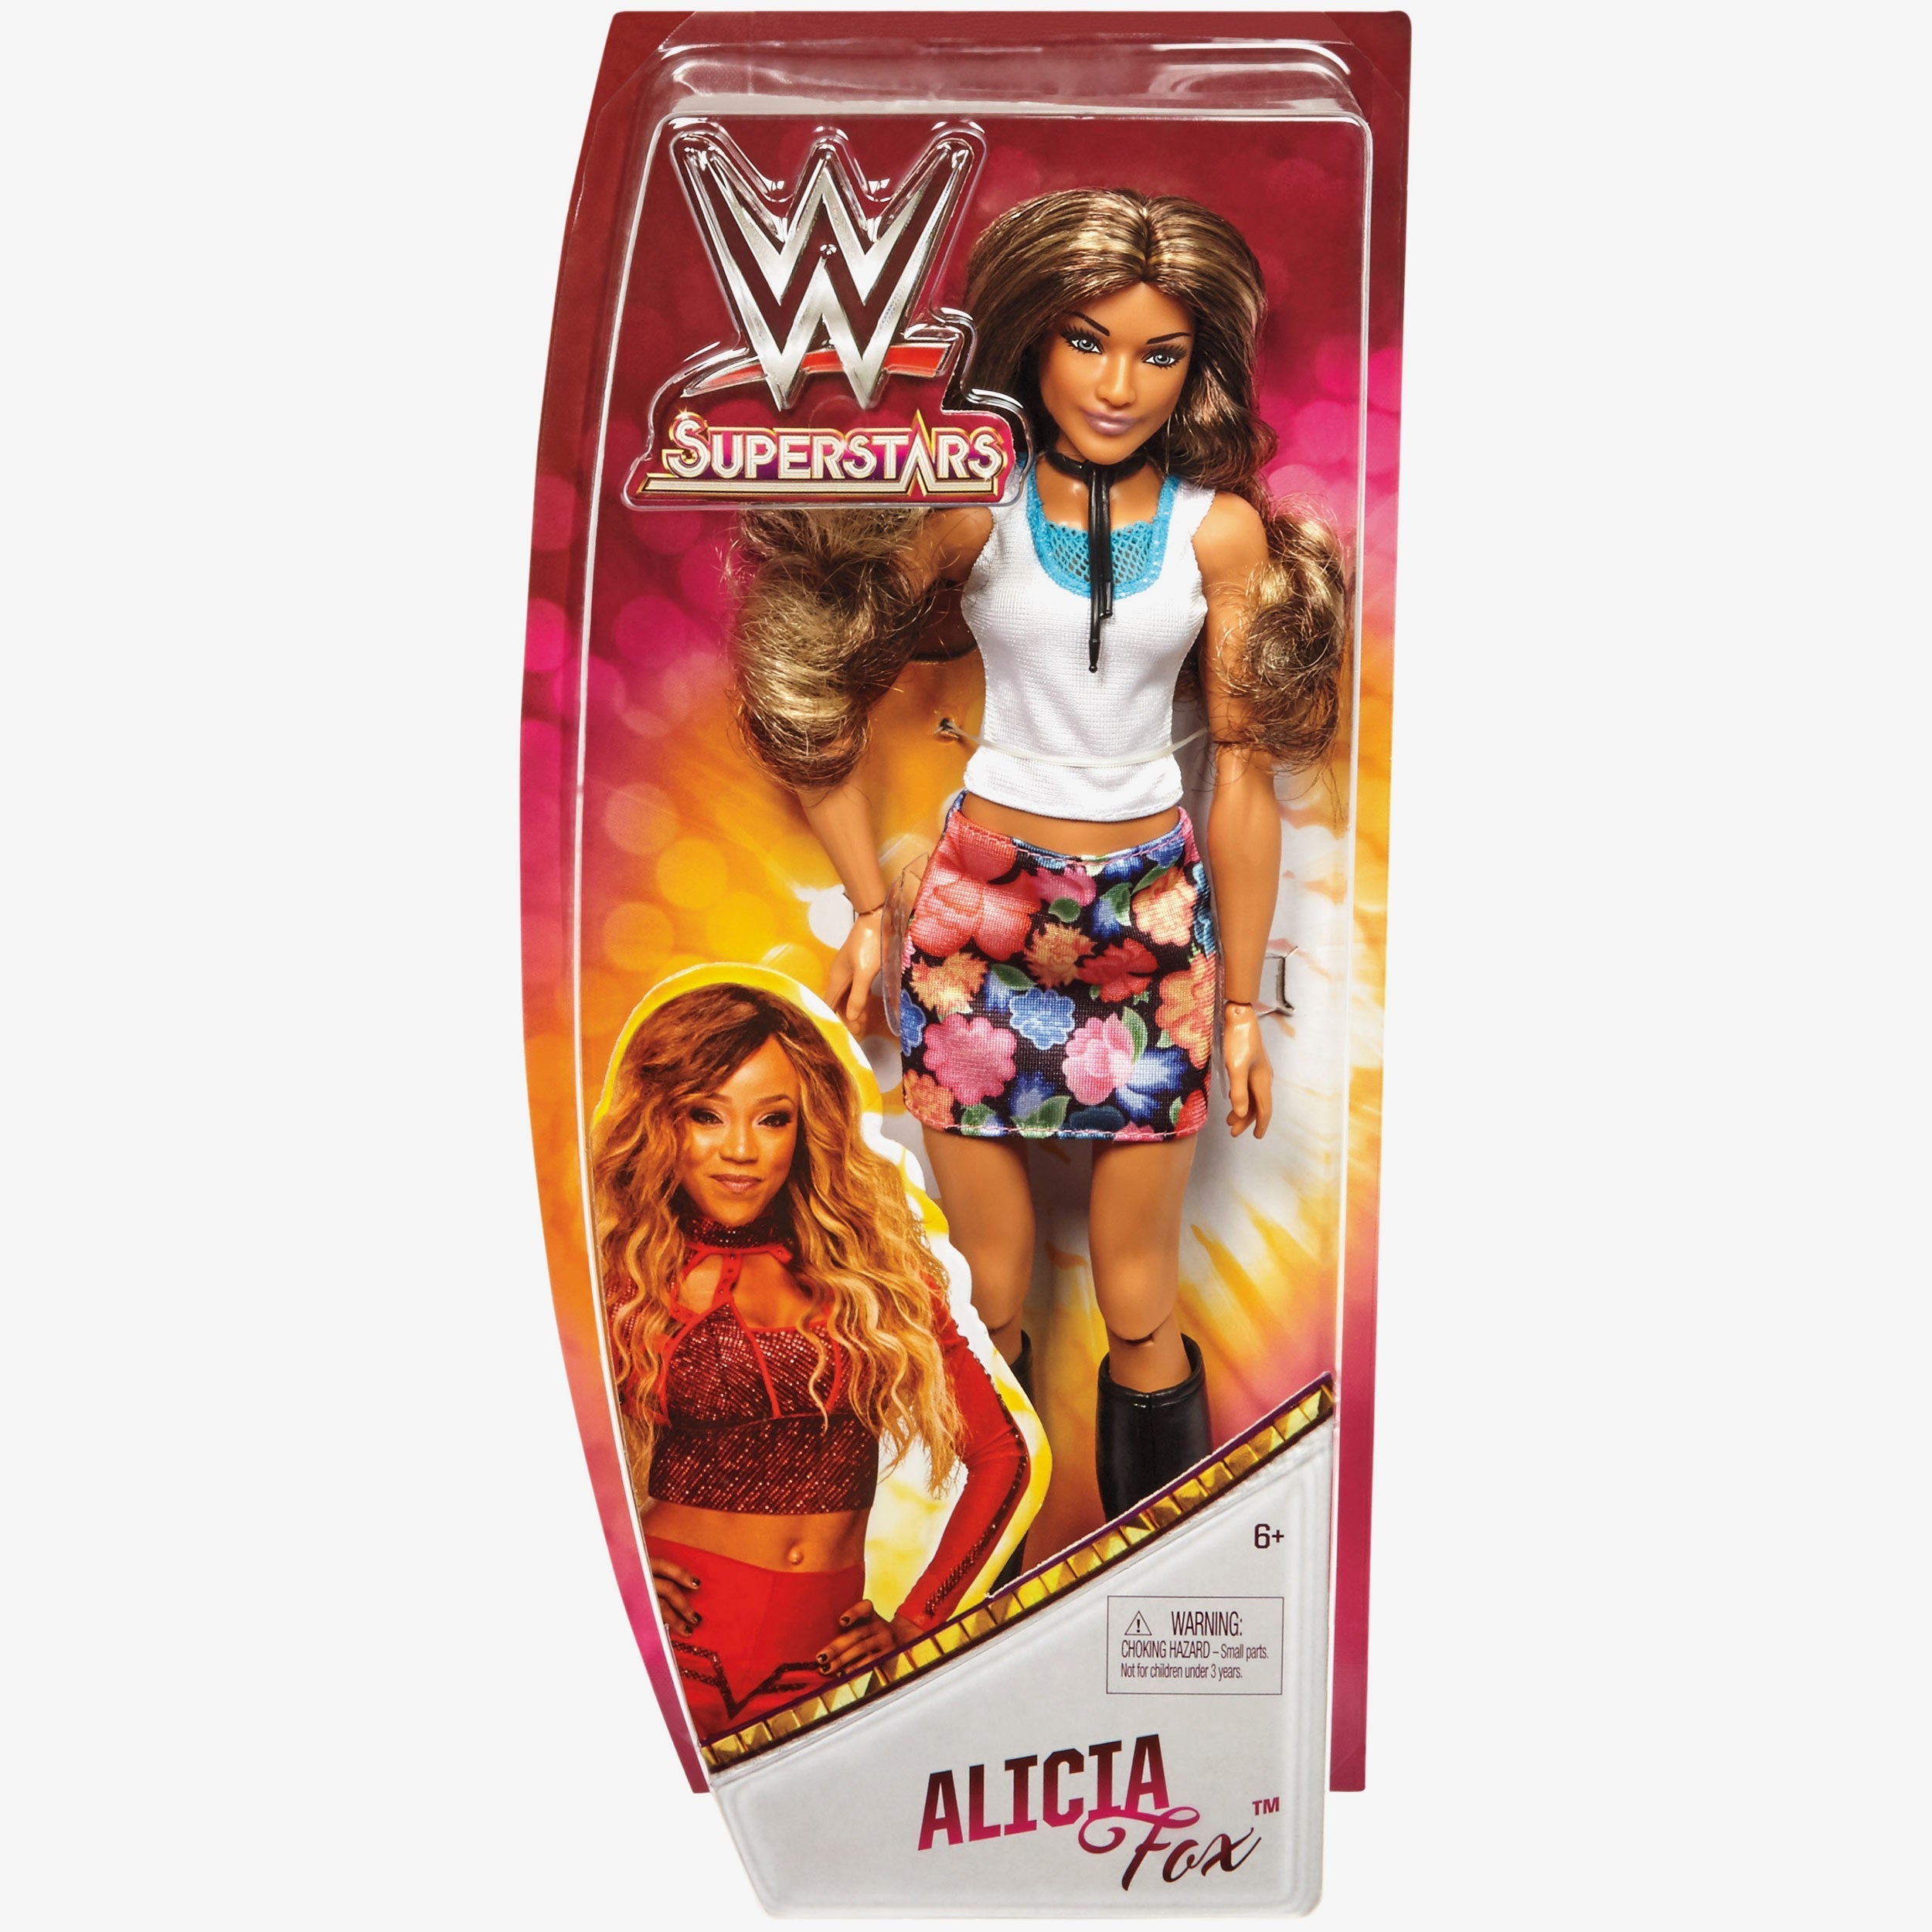 Alicia Fox - 12 inch WWE Fashion Doll – wrestlingshop.com